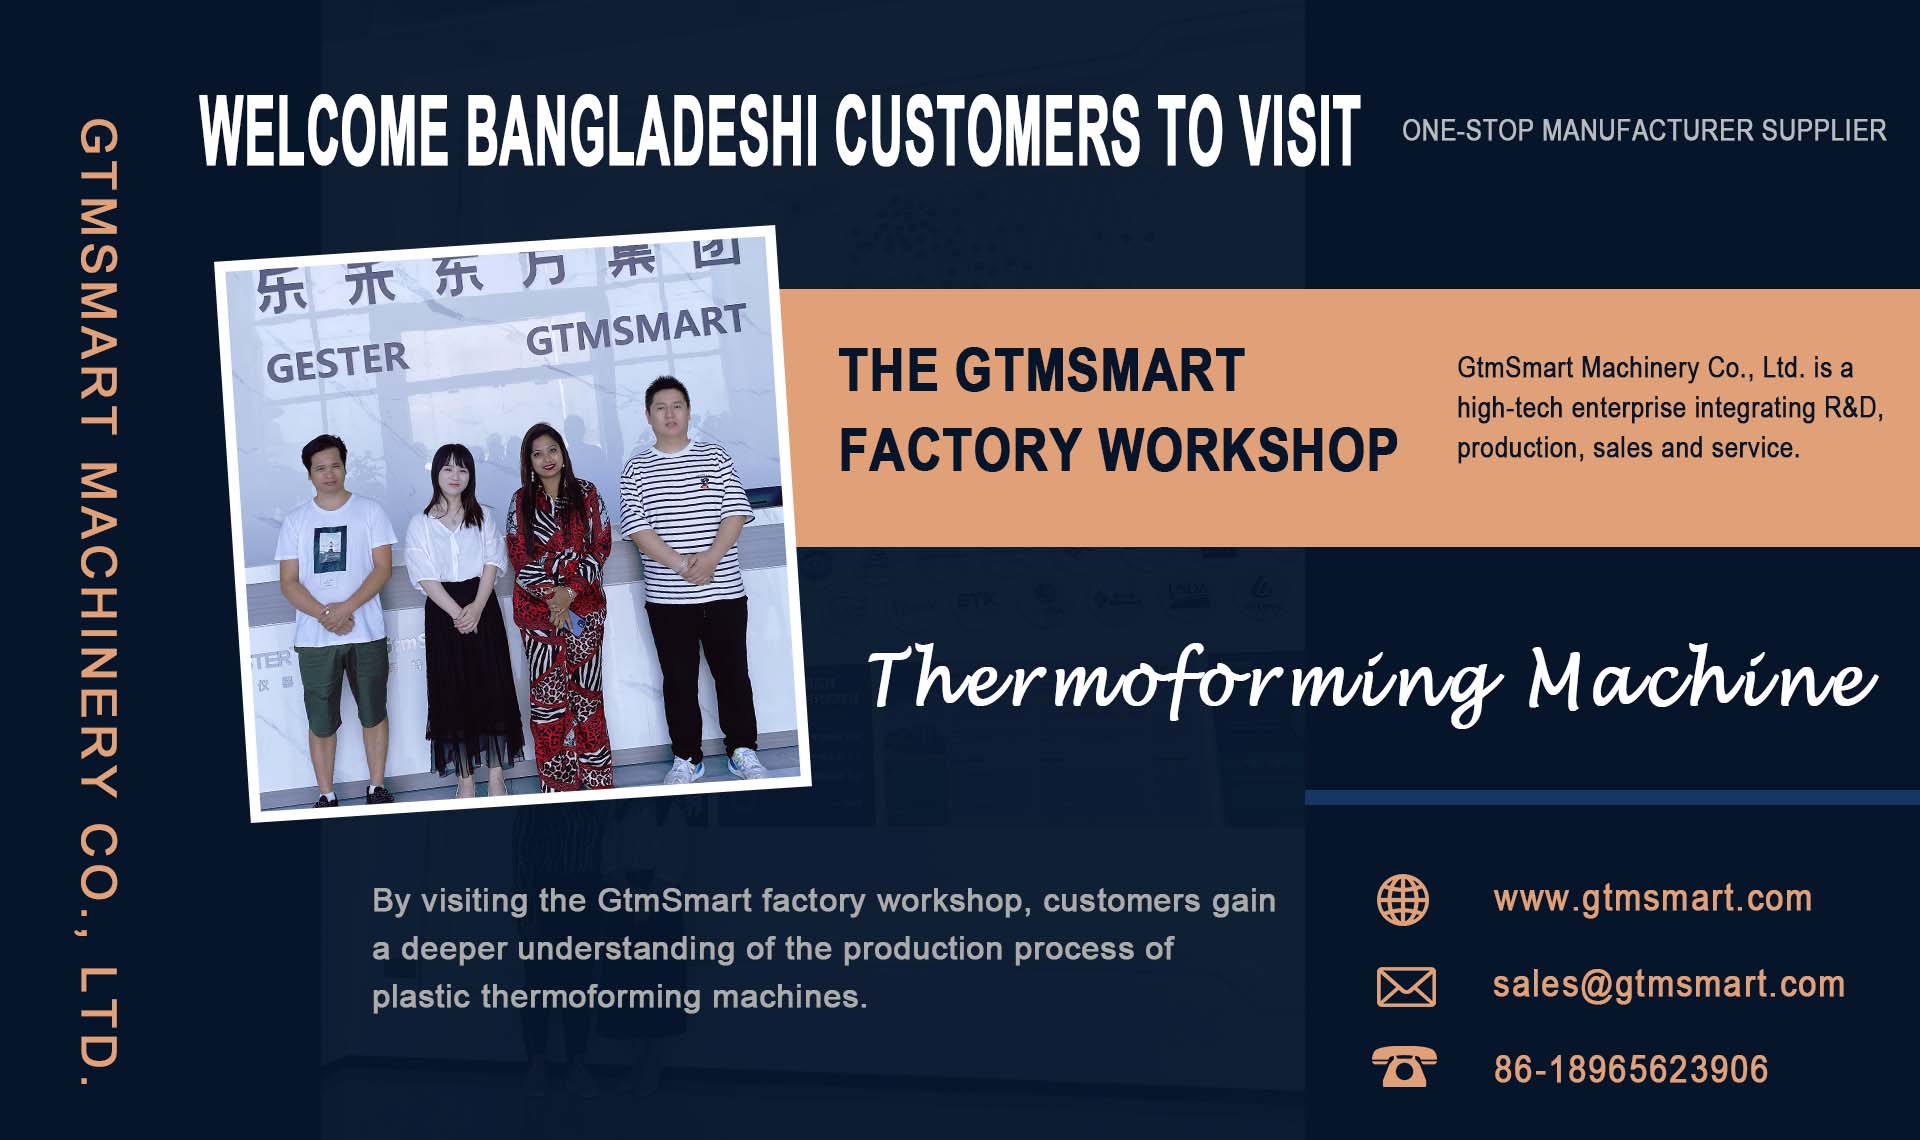 Invitamos a los clientes de Bangladesh a visitar el taller de fábrica GtmSmart